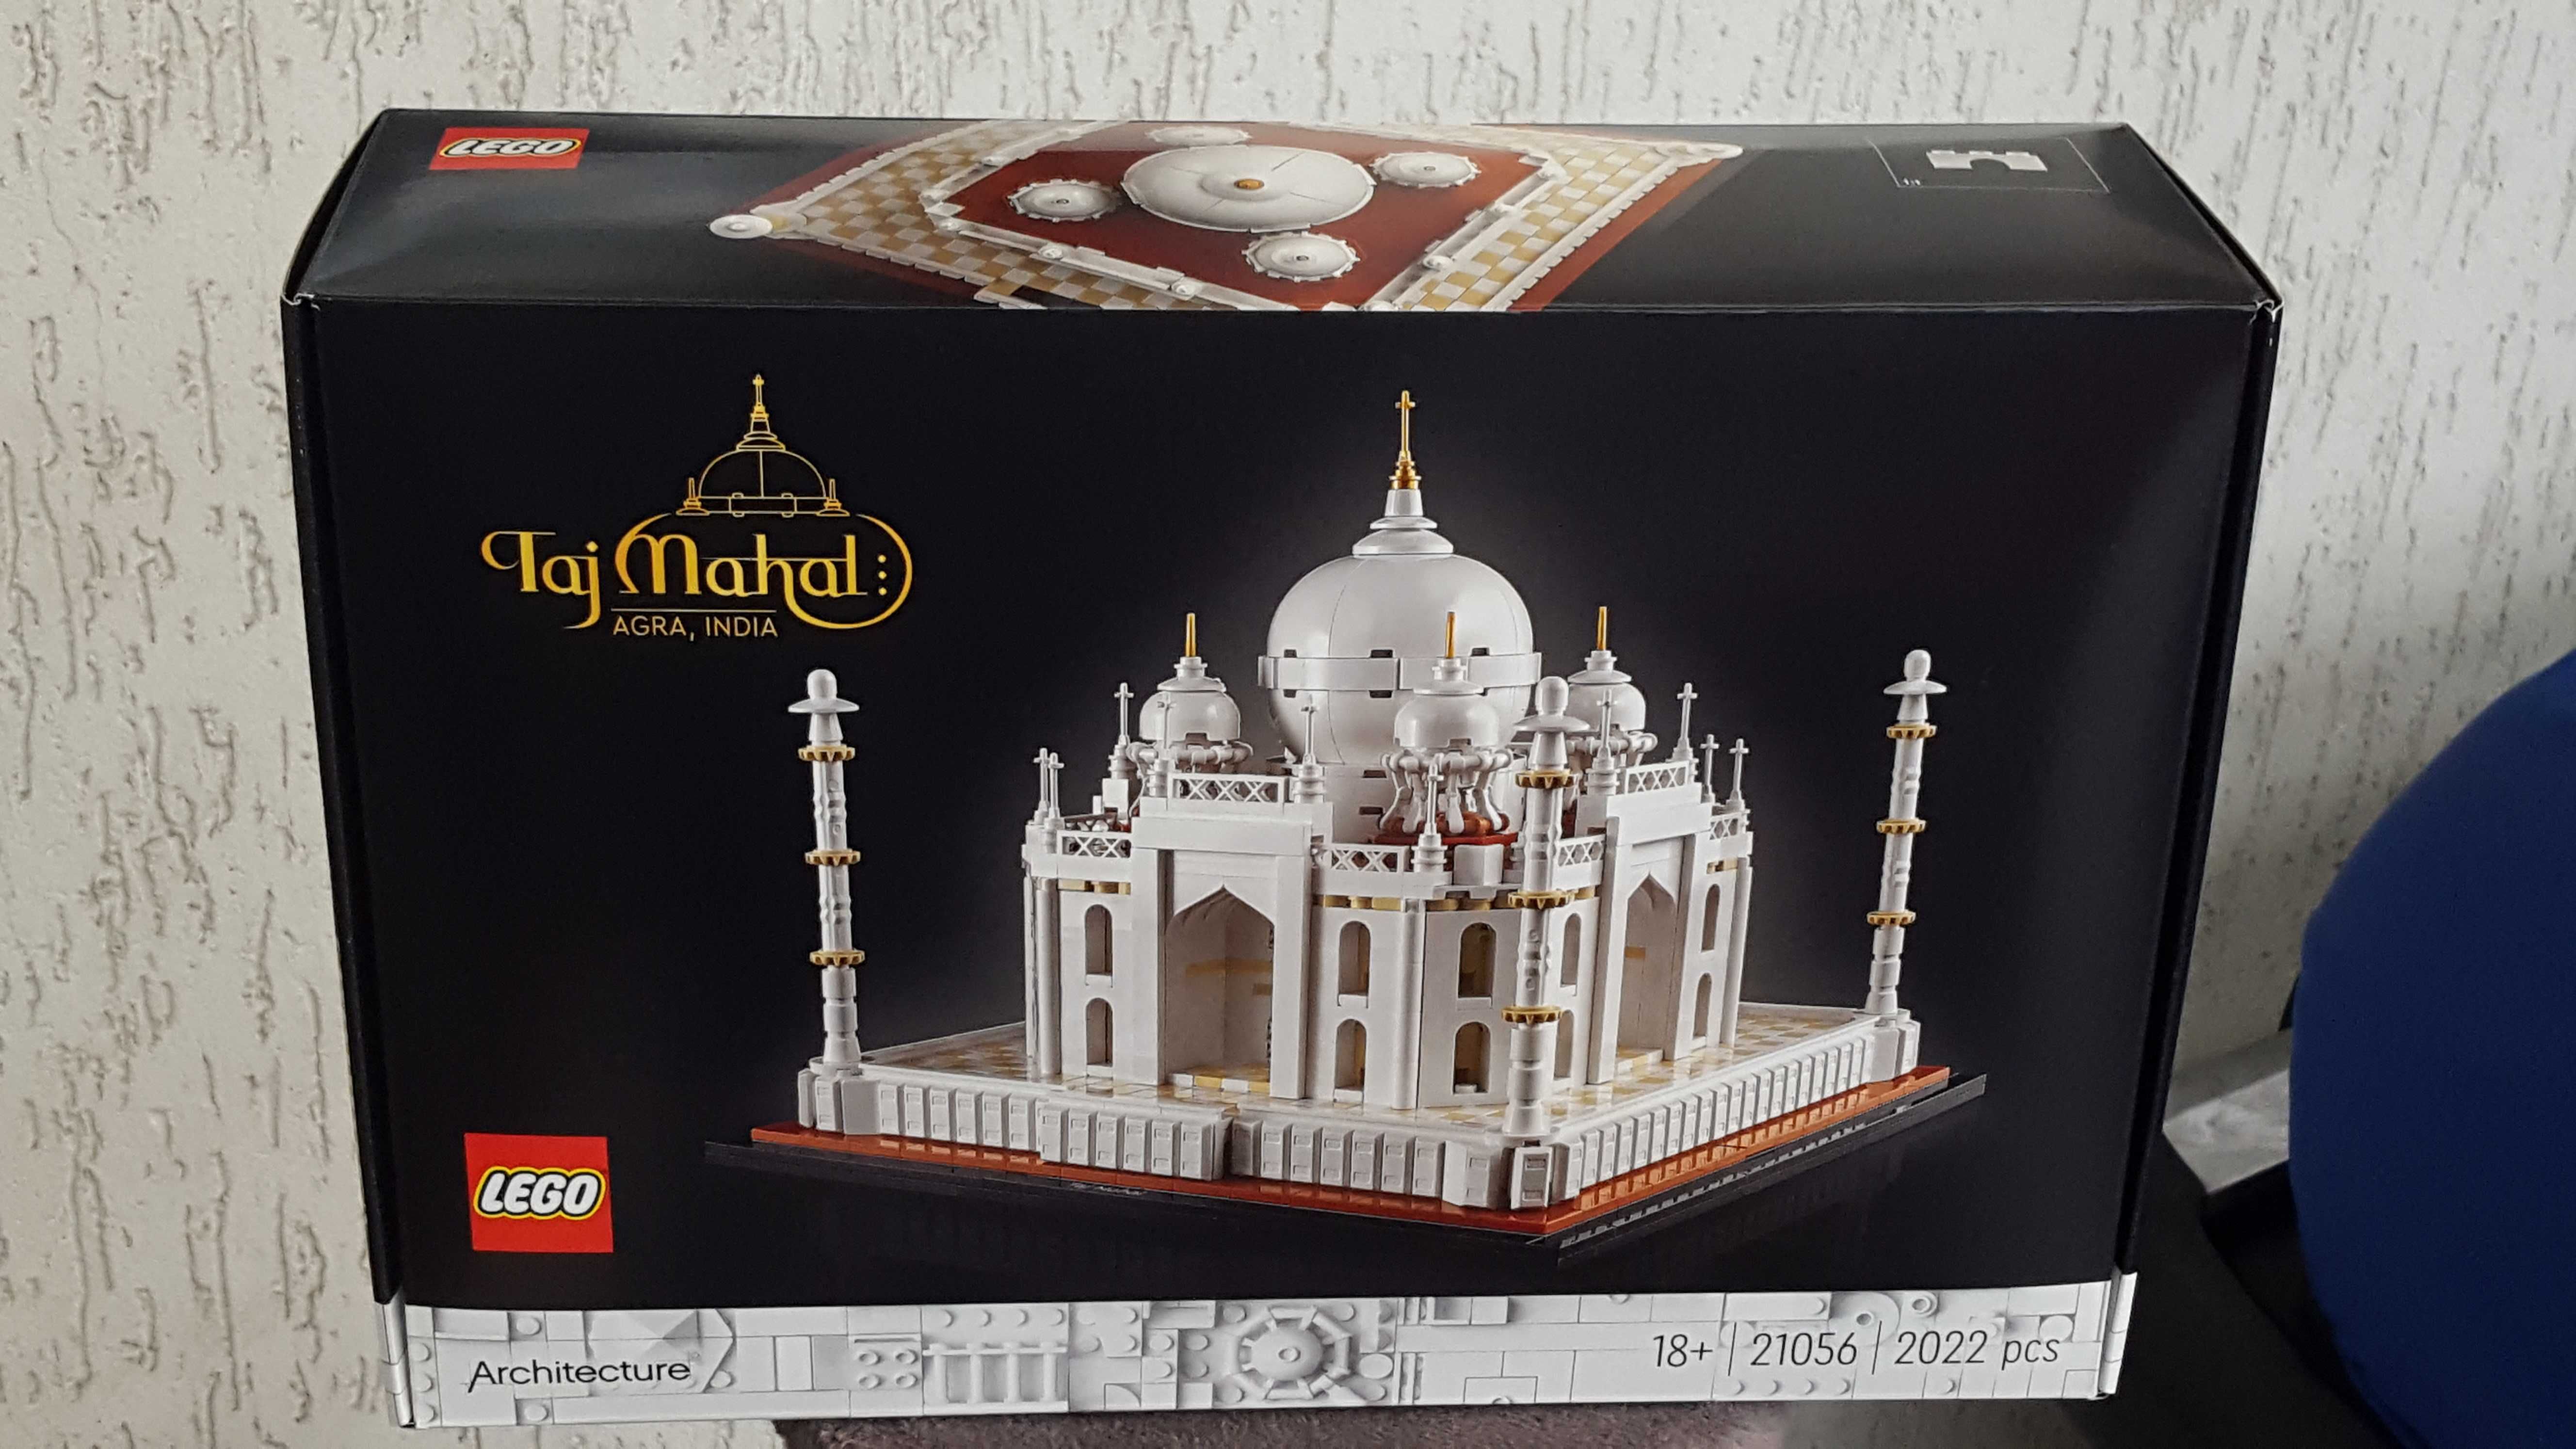 Lego 21056 Taj Mahal Agra India